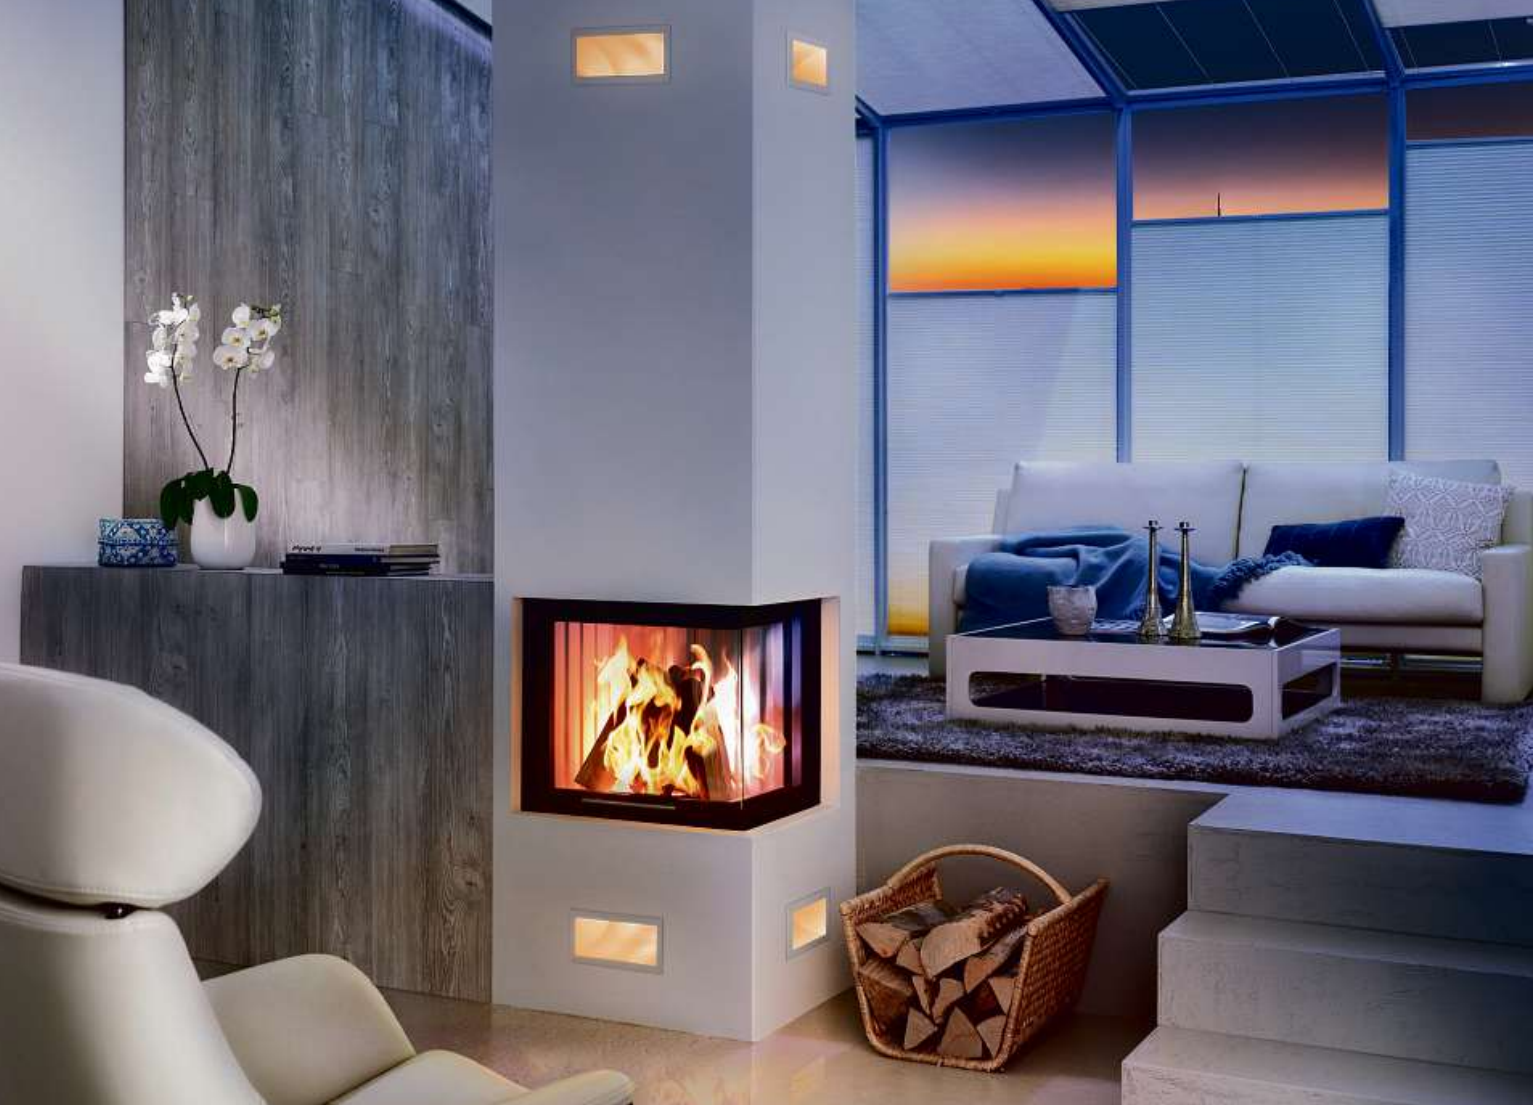 Die optimale Feuerstelle ist nicht nur auf die persönlichen Bedürfnisse nach Wärme und Design abgestimmt, sondern auf die Räumlichkeiten. Foto: AdK/www.kachelofenwelt.de/Spartherm